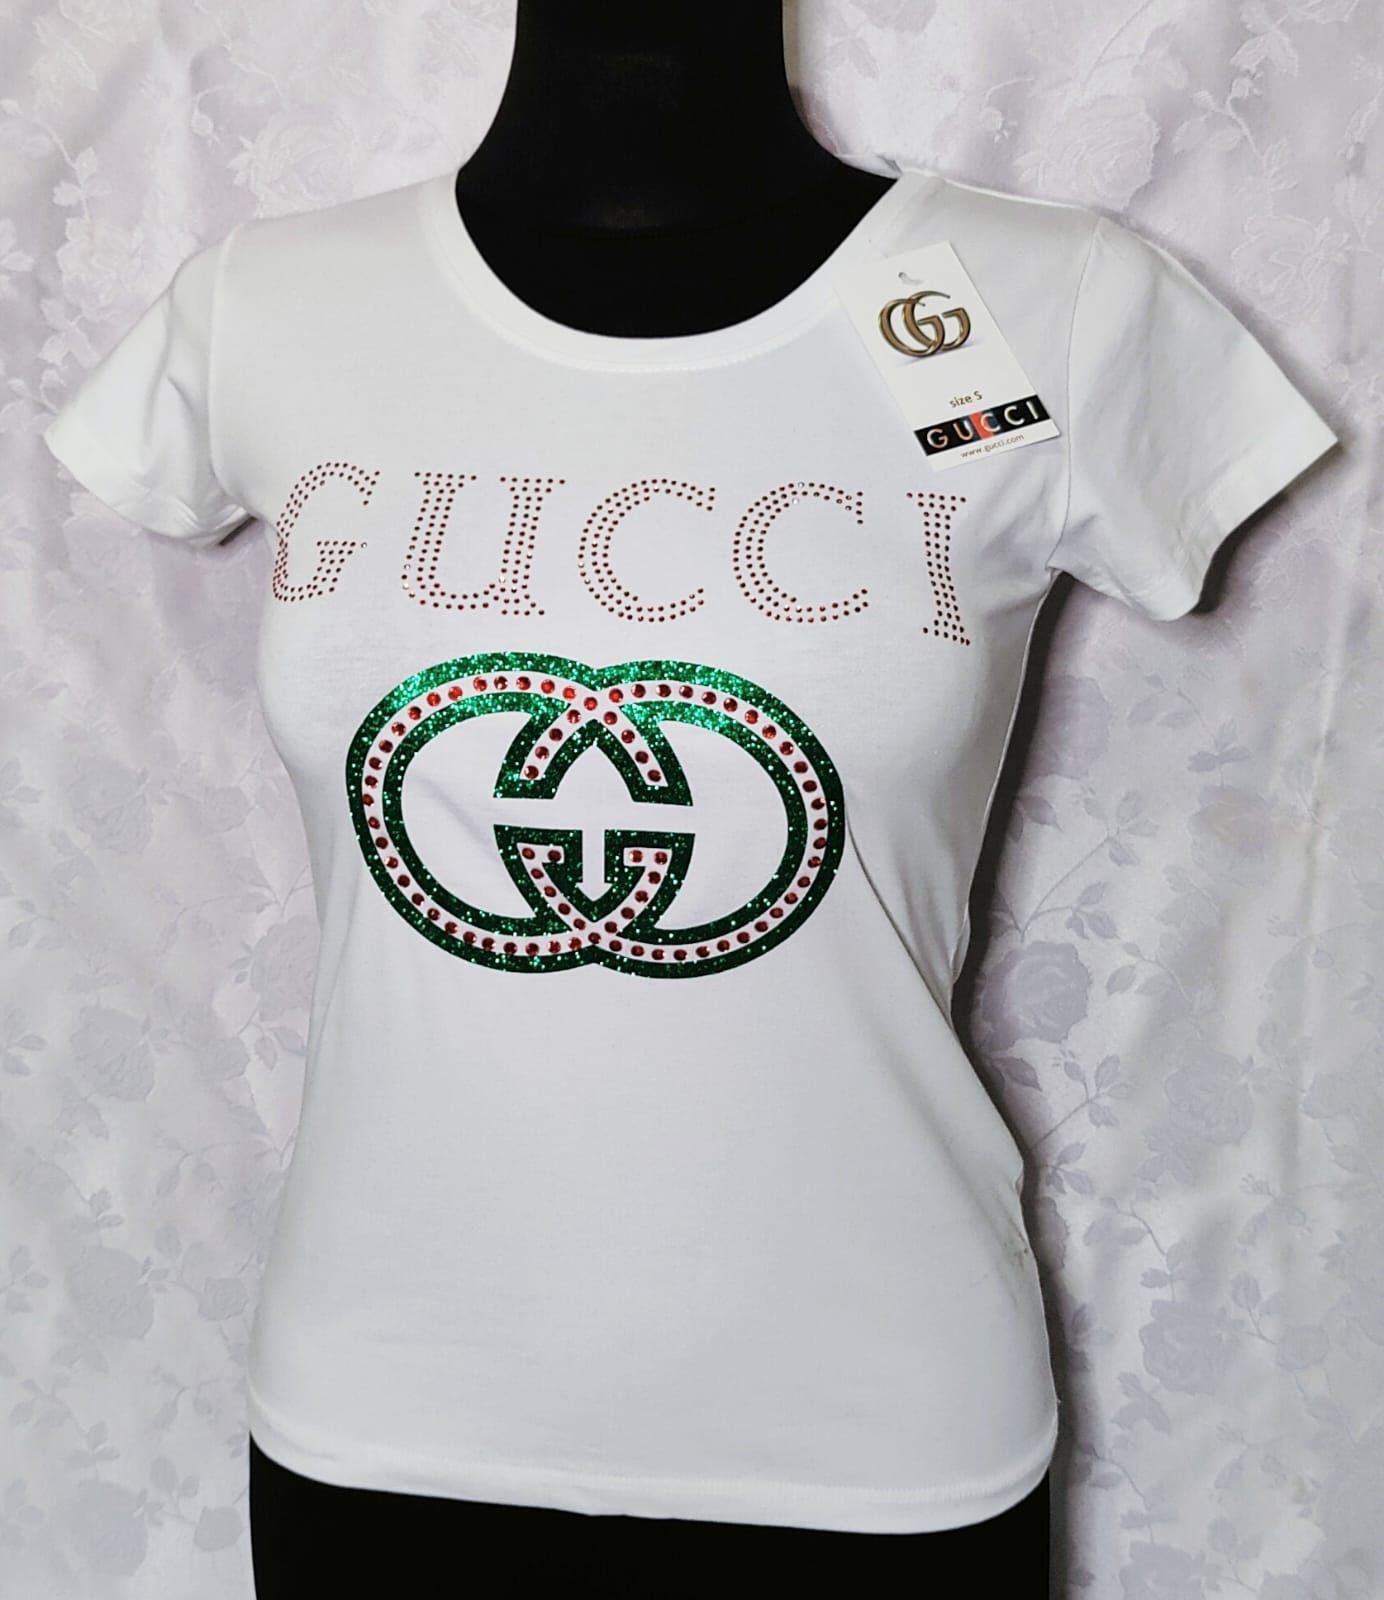 Biała koszulka damska Gucci S M L XL wysyłka pobranie bardzo ładna hit